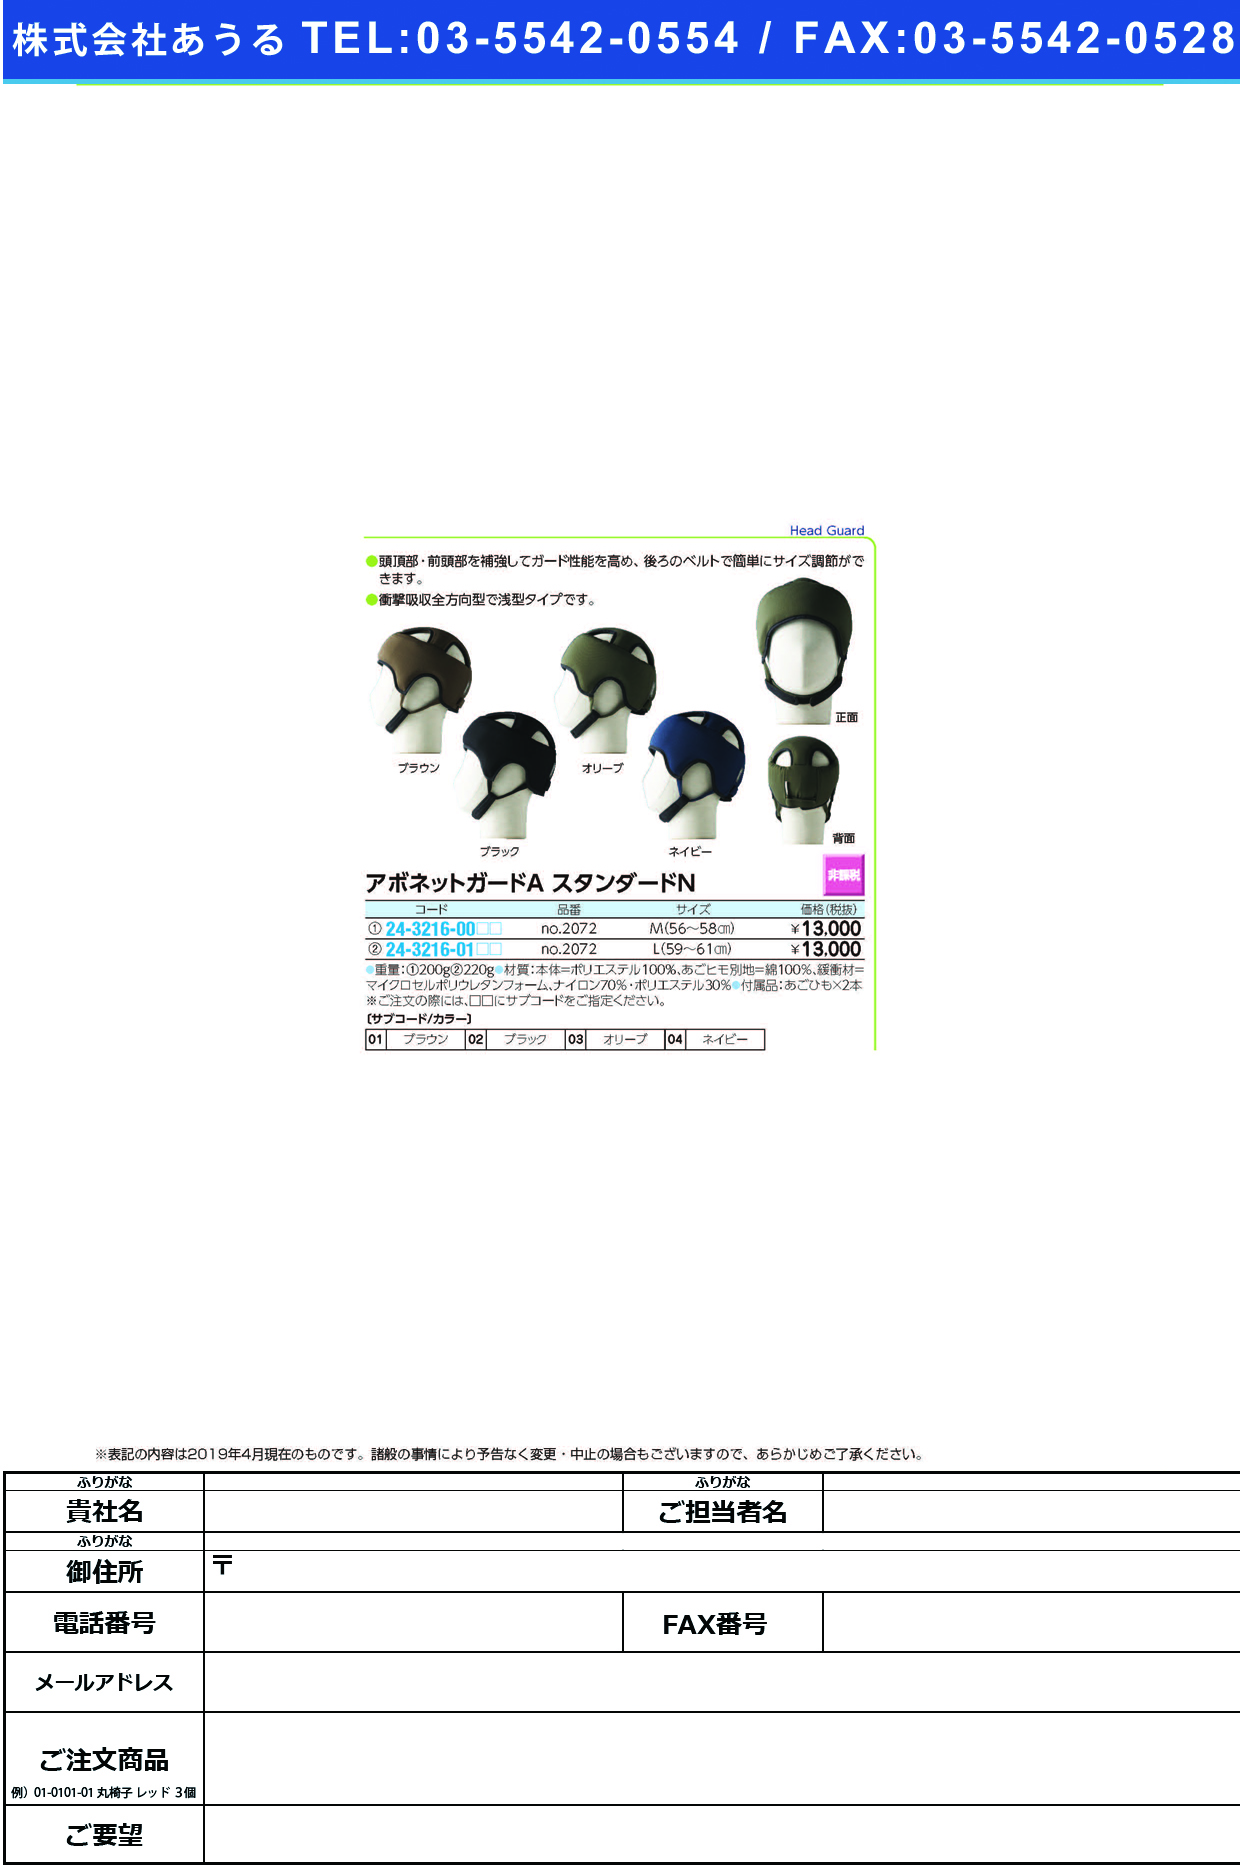 (24-3216-00)アボネットガードＡスタンダードＮ NO.2072(56-58CM)M ｱﾎﾞﾈｯﾄｶﾞｰﾄﾞAｽﾀﾝﾀﾞｰﾄﾞ ブラック(特殊衣料)【1個単位】【2019年カタログ商品】